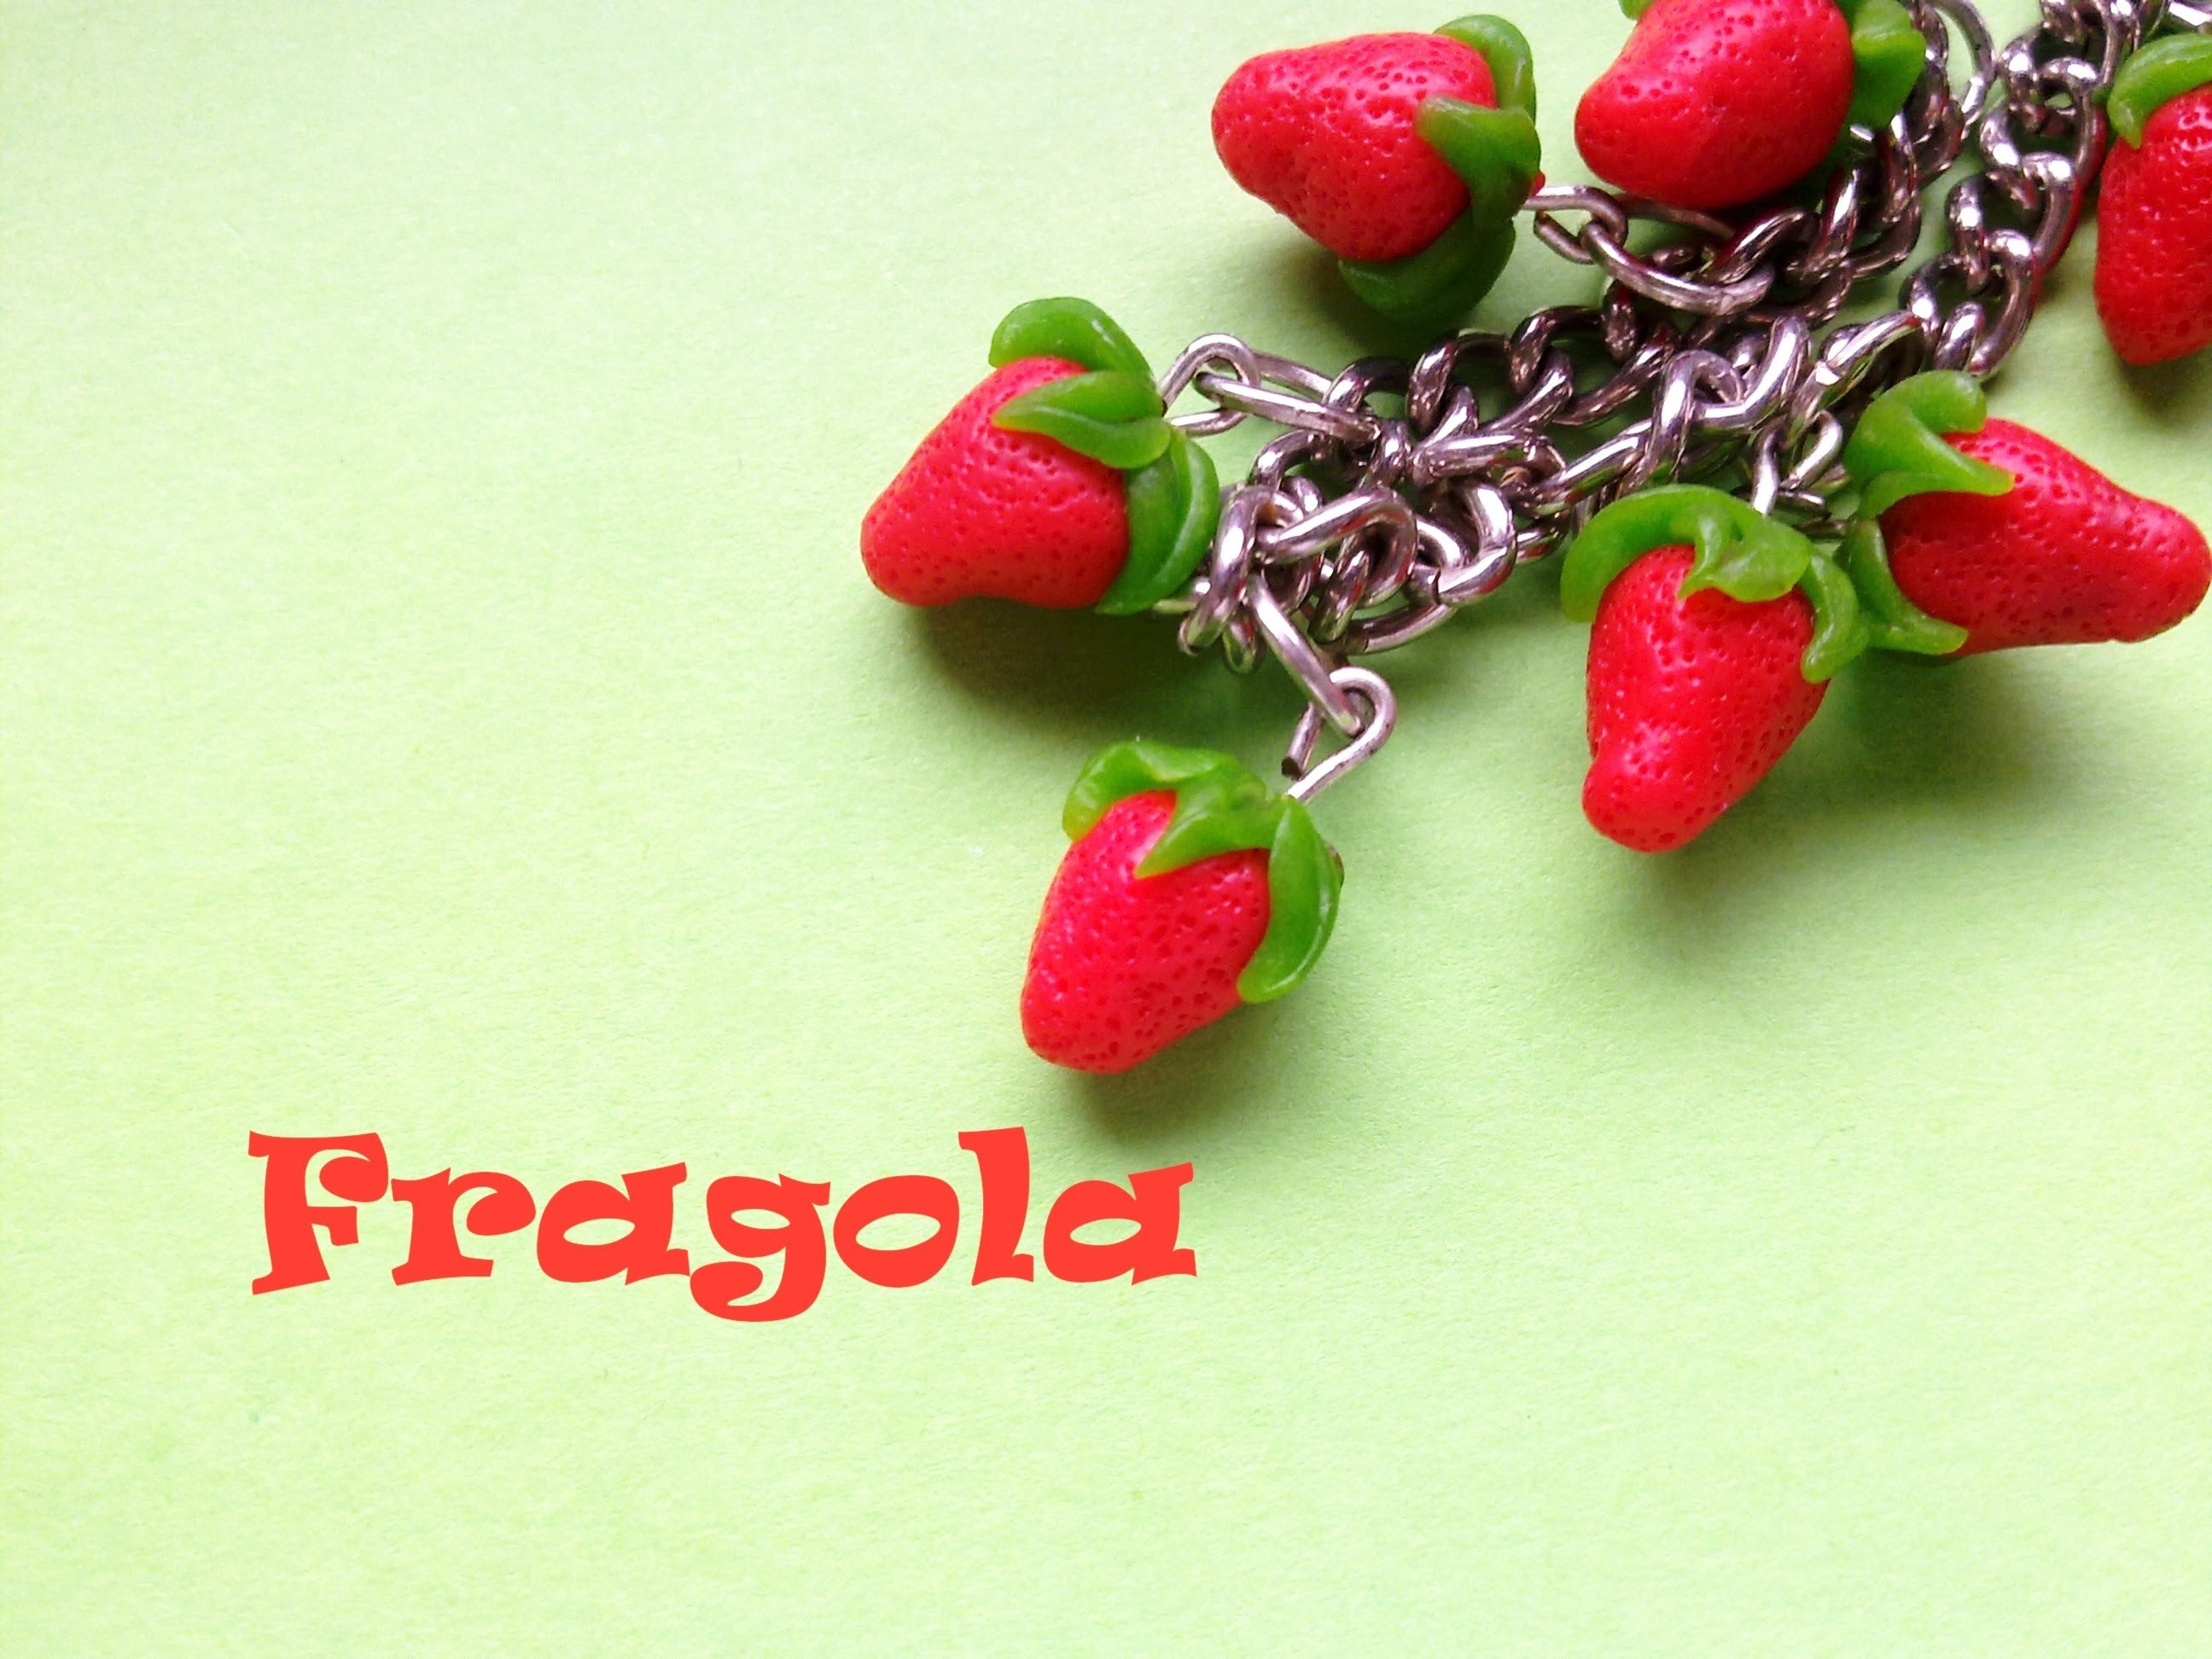 Fragola. Strawberry - Polymer Clay Tutorial